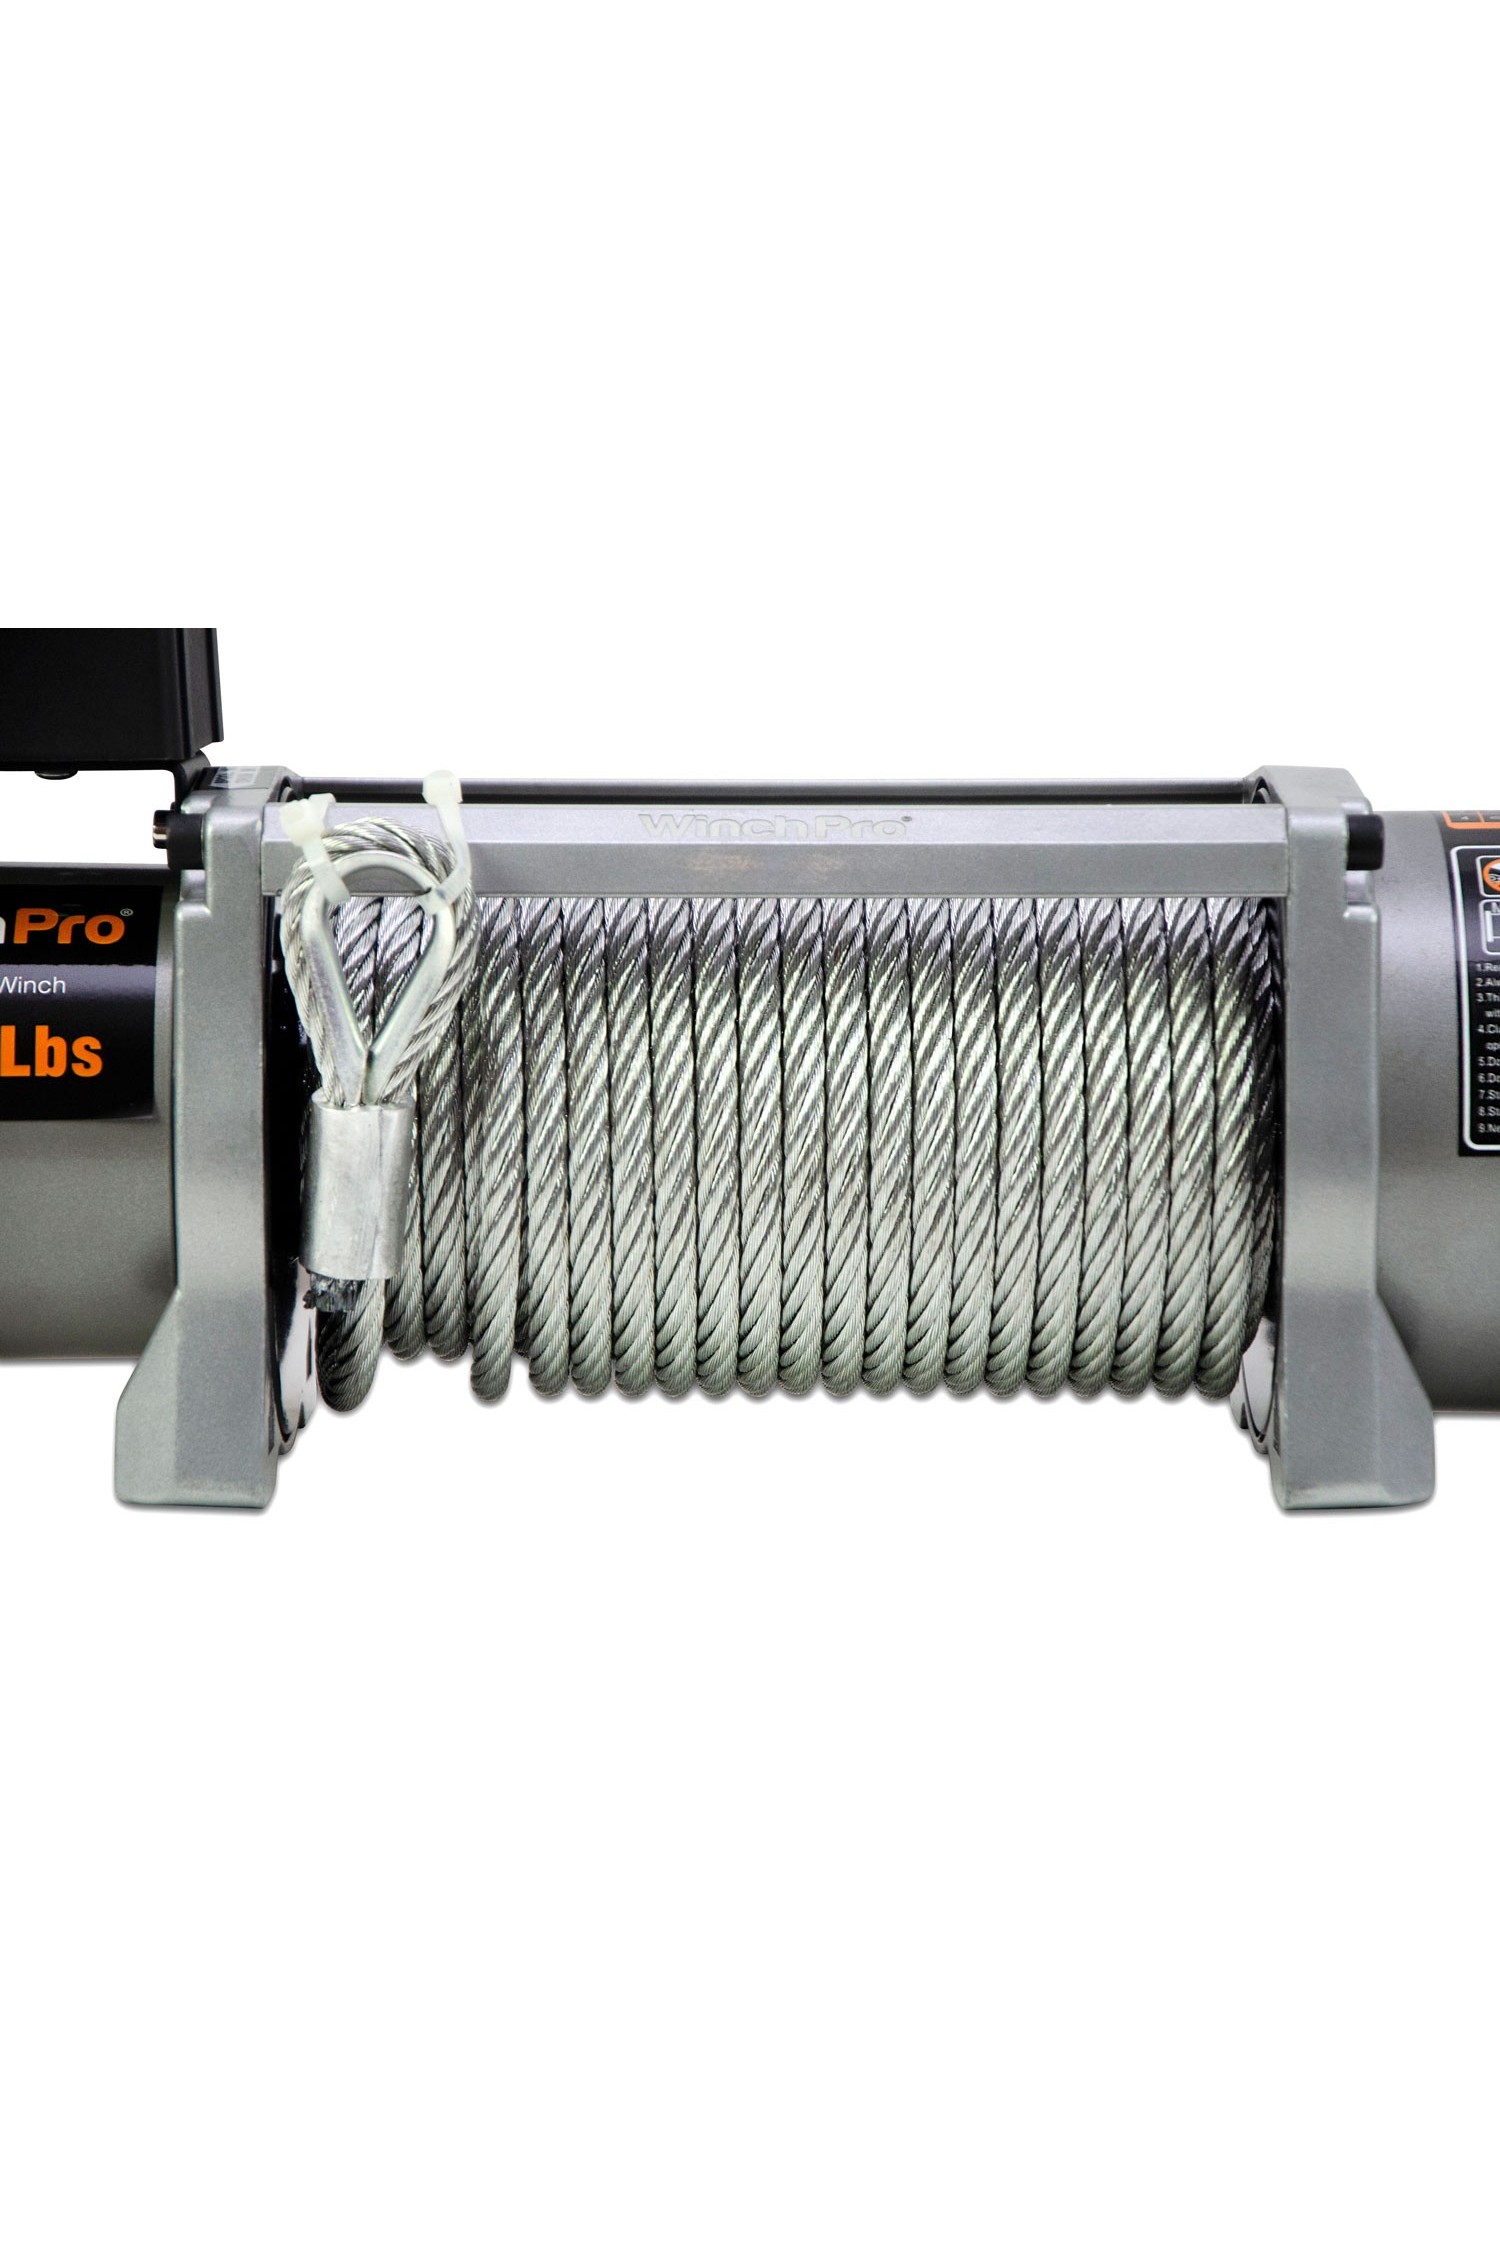 WinchPro - Cabrestante Eléctrico 12V 5900kg/13000lbs, 26m De Cuerda De  Dyneema Sintética, 2 Mandos A Distancia Incluidos (1 Inalámbrico, 1 Cable)